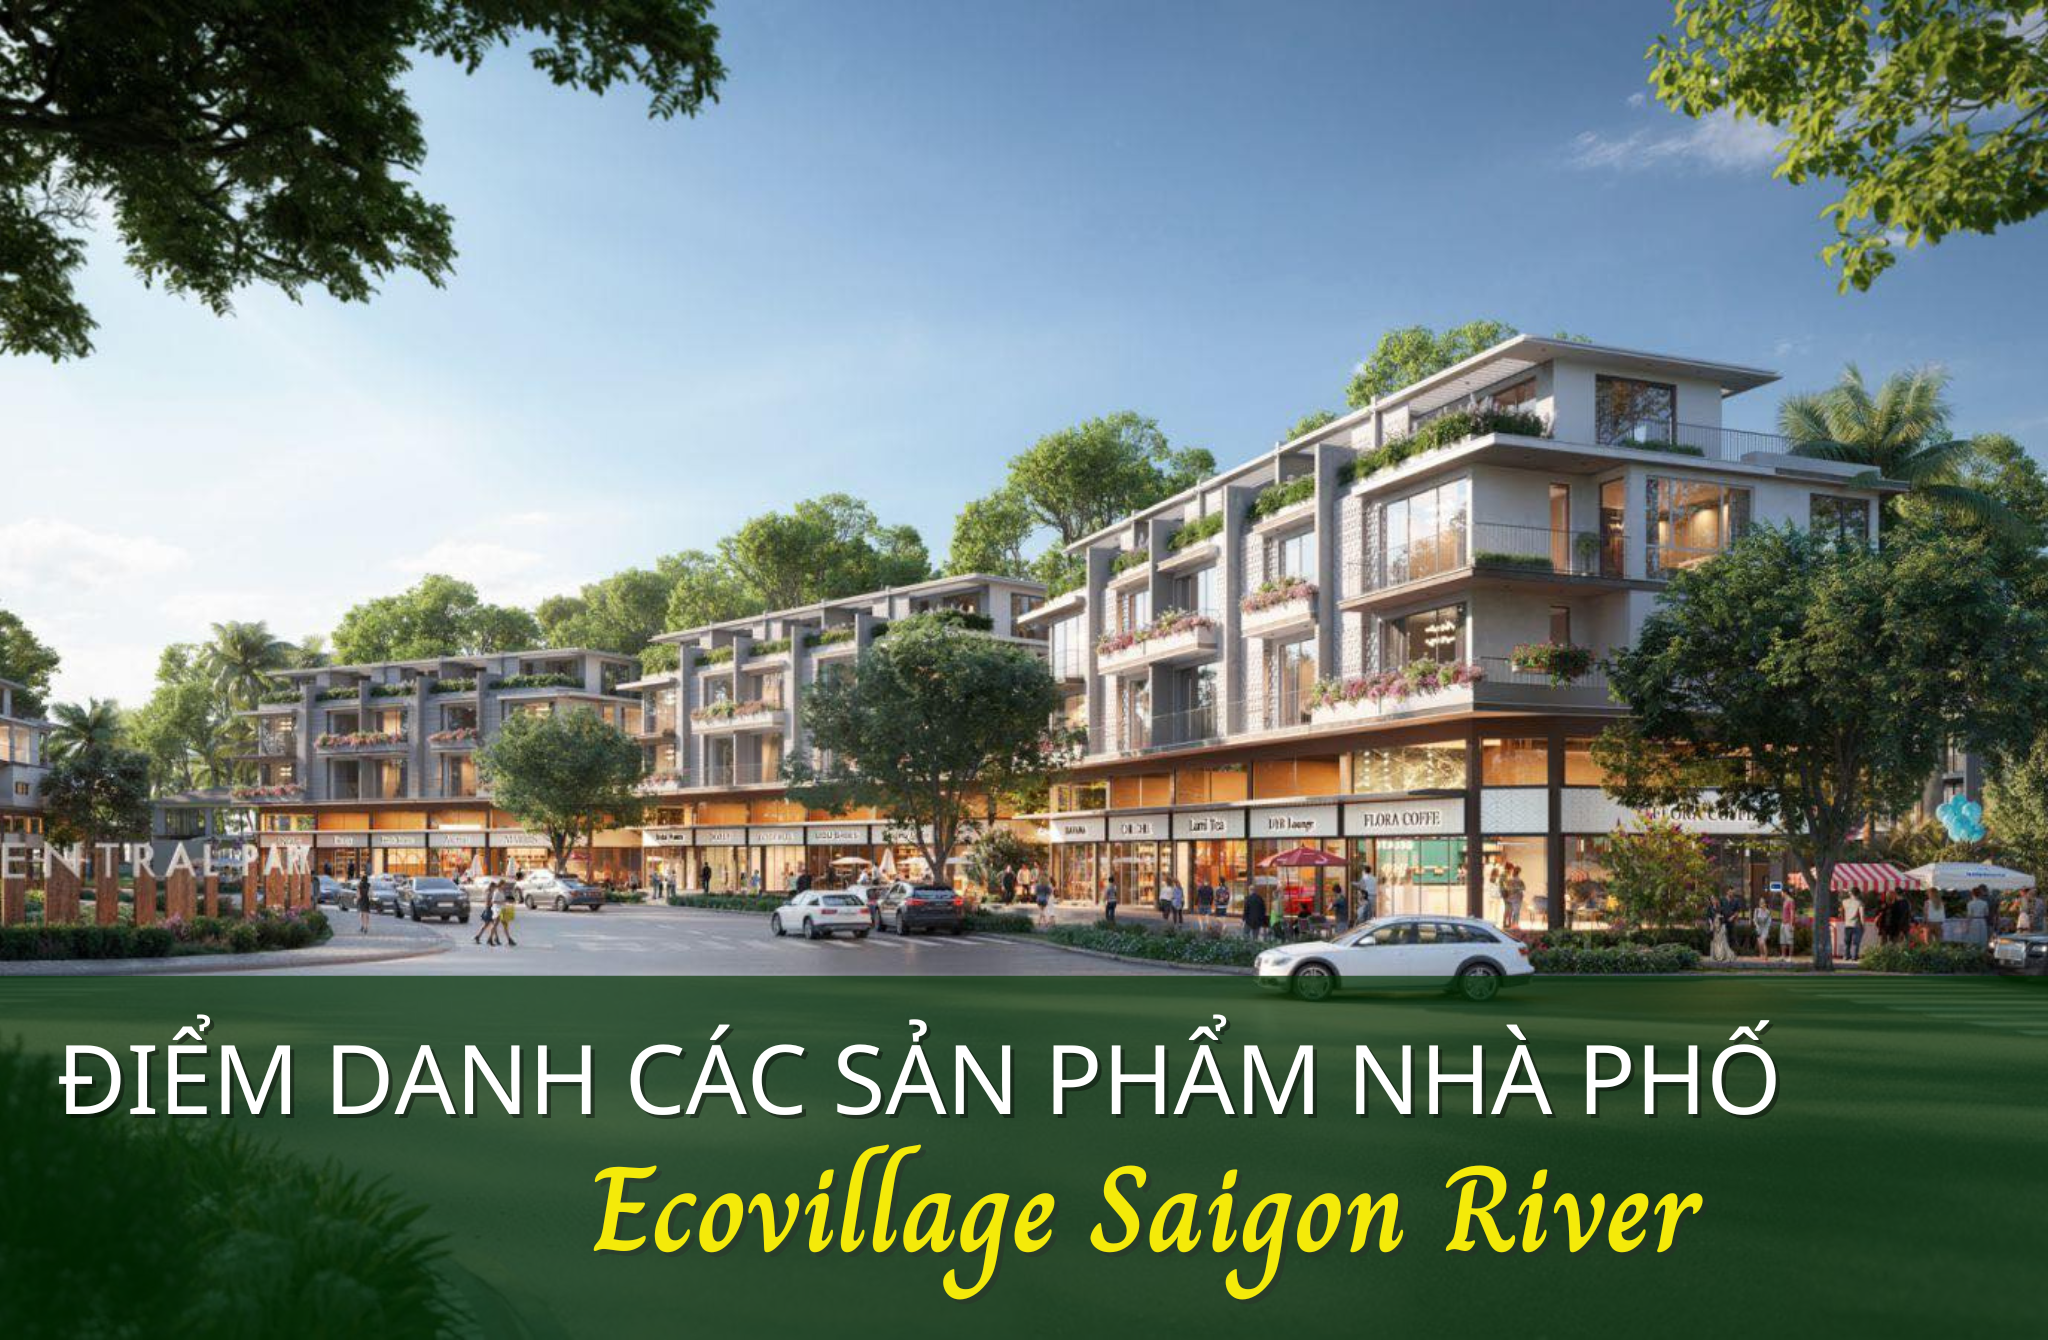 Điểm danh các sản phẩm nhà phố Ecovillage Saigon River